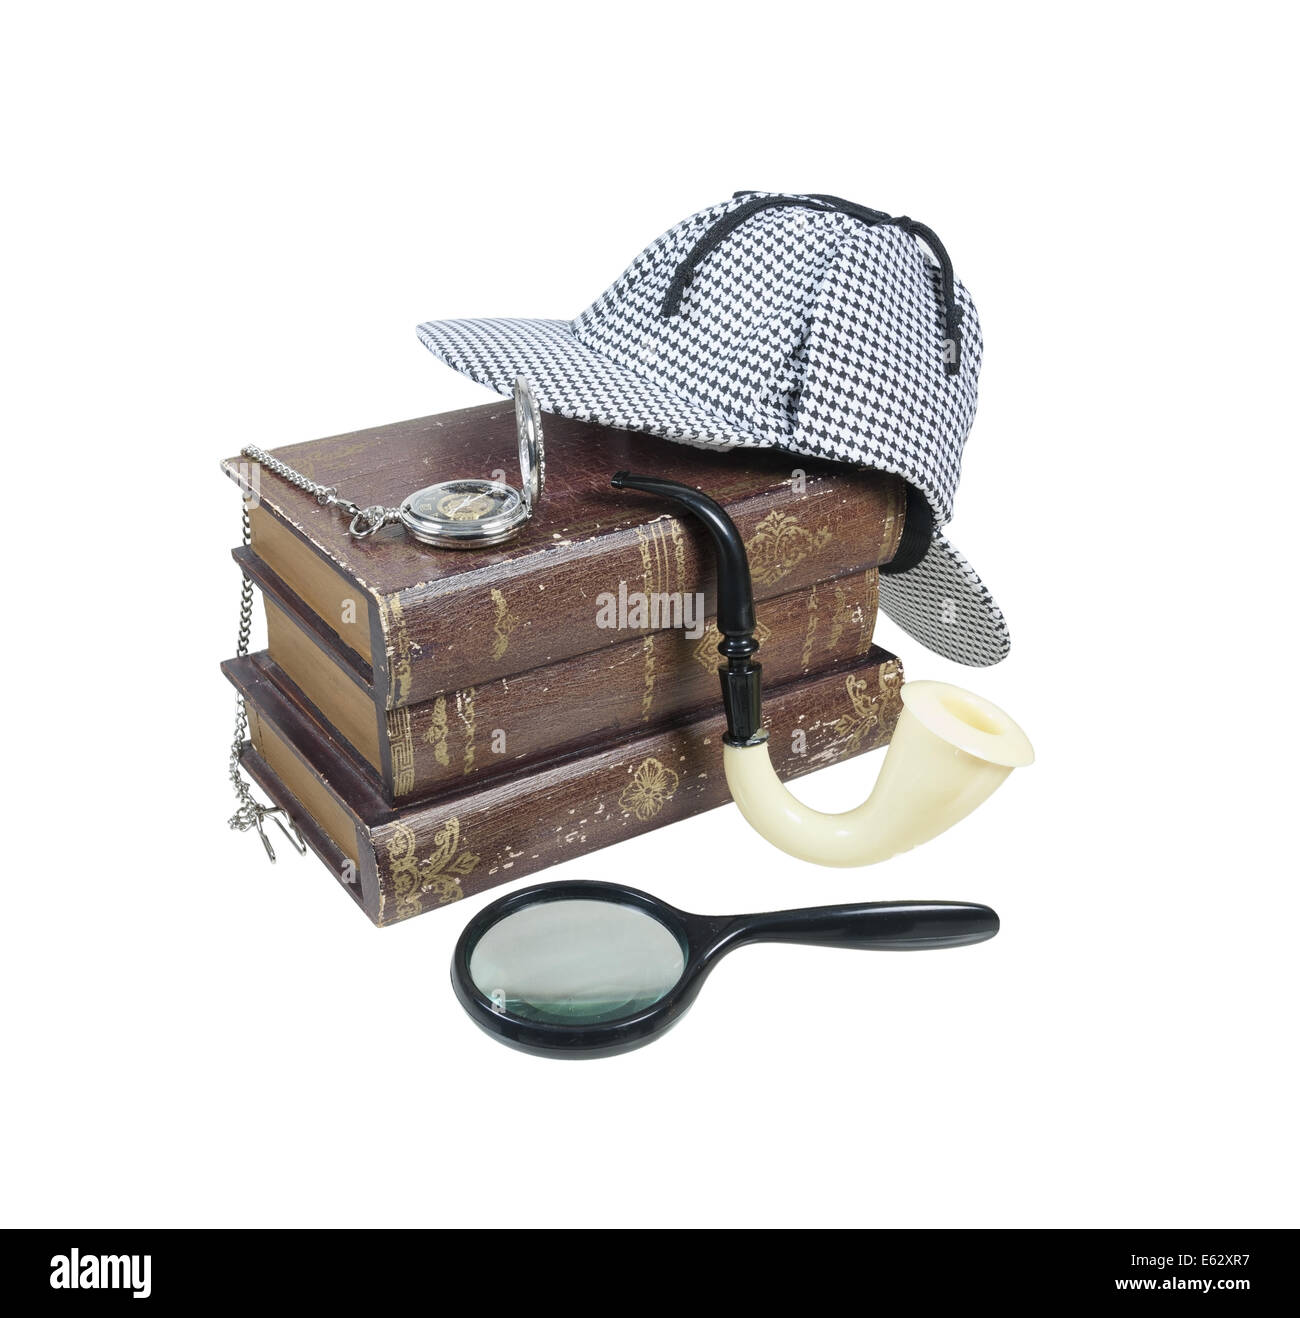 Mystery-Bücher mit Deerstalker Kappe, Lupe, Rohr und Taschenuhr - Pfad enthalten Stockfoto